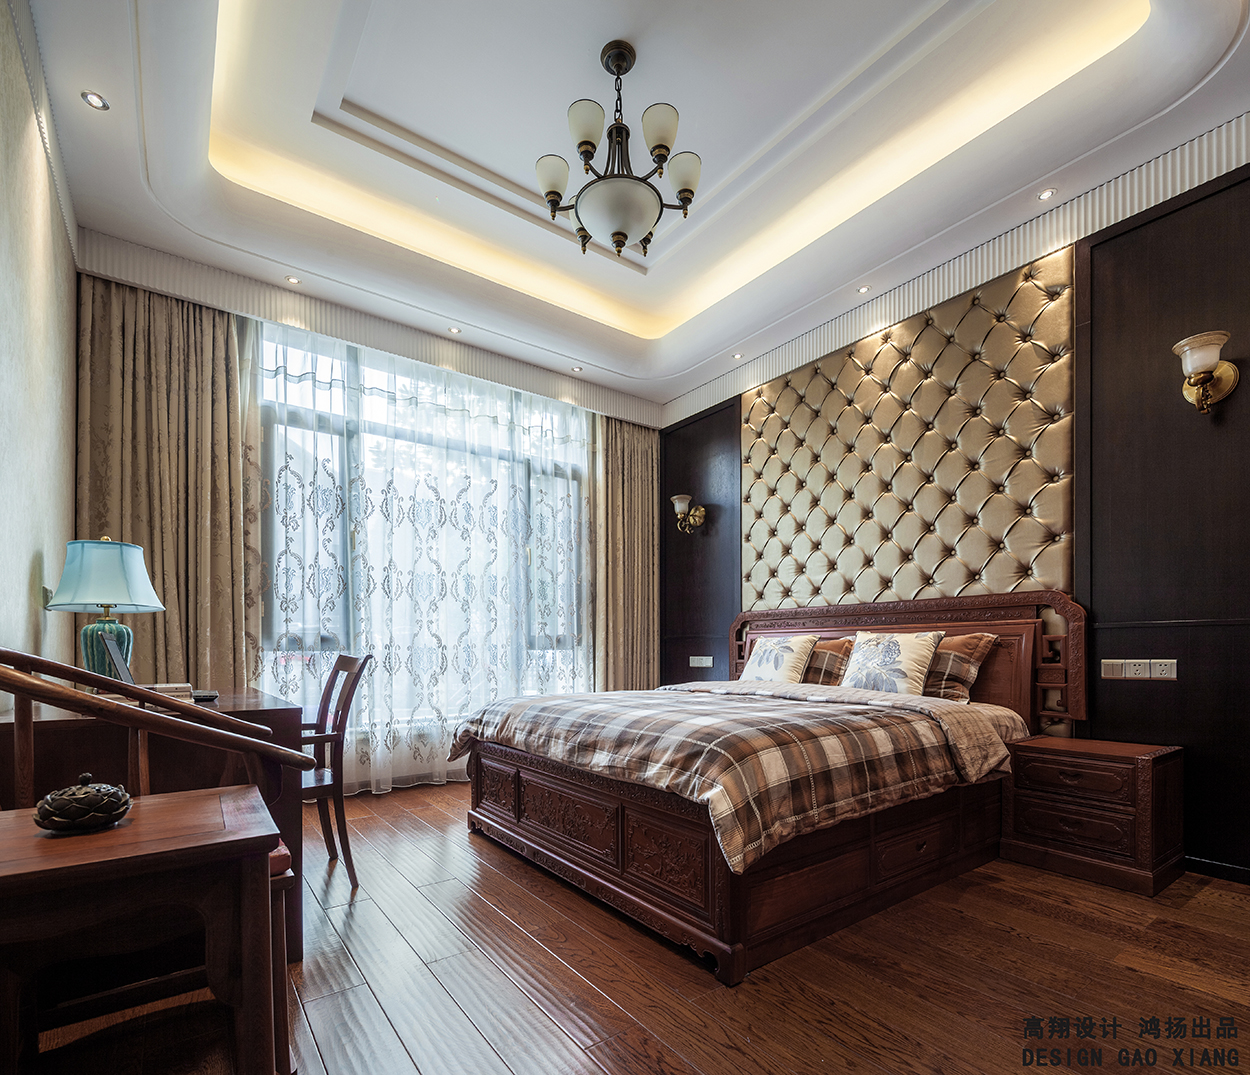 新中式 高大上 高品质 古典气息 卧室图片来自鸿扬家装武汉分公司在文士雅风之复合写意系列的分享